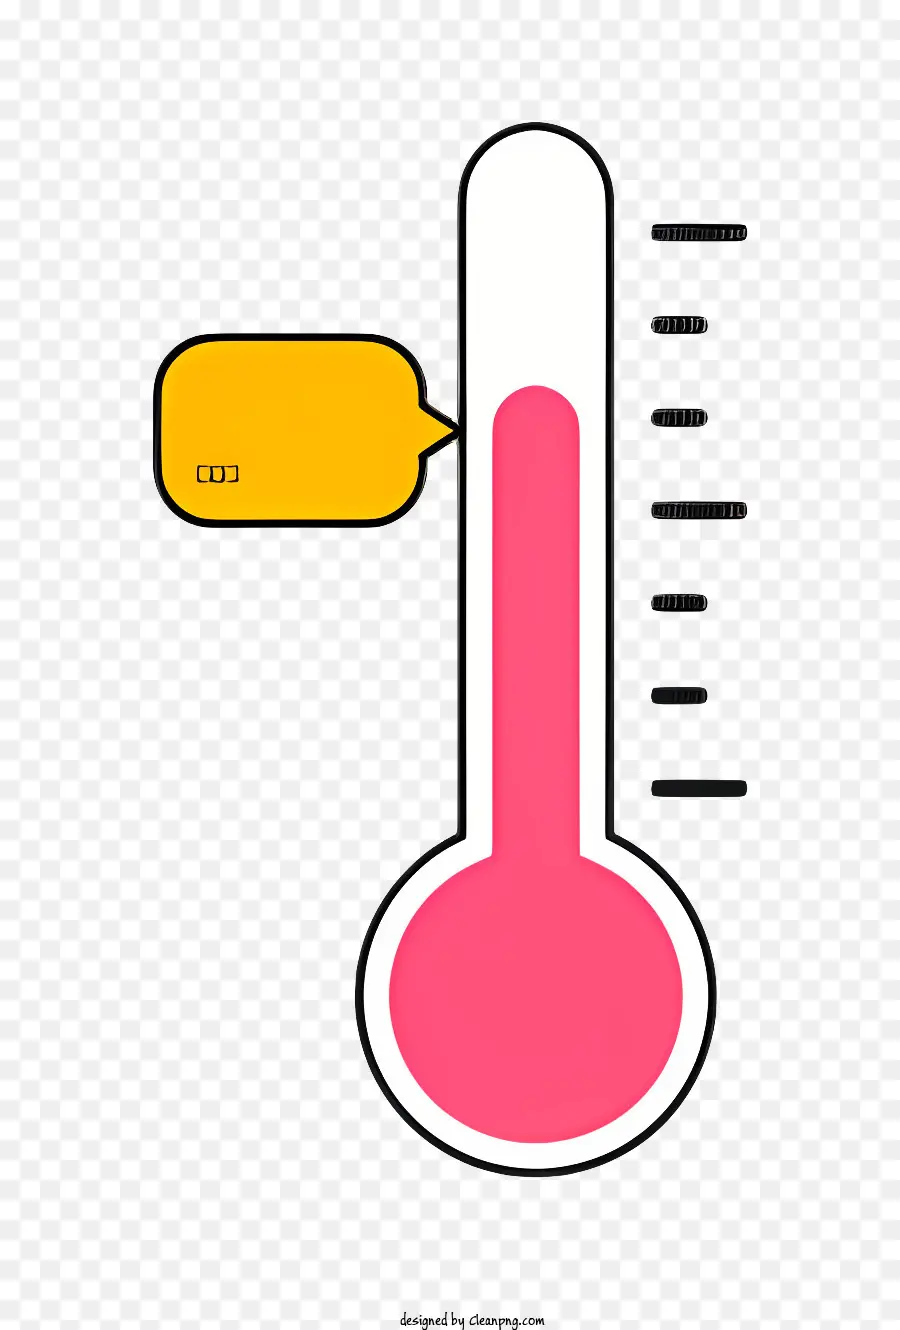 Thermometer heiße Spitze gelbe Körperkreisform Ellipseform - Schwarz-Weiß-Bild des nach oben zeigenden Thermometers